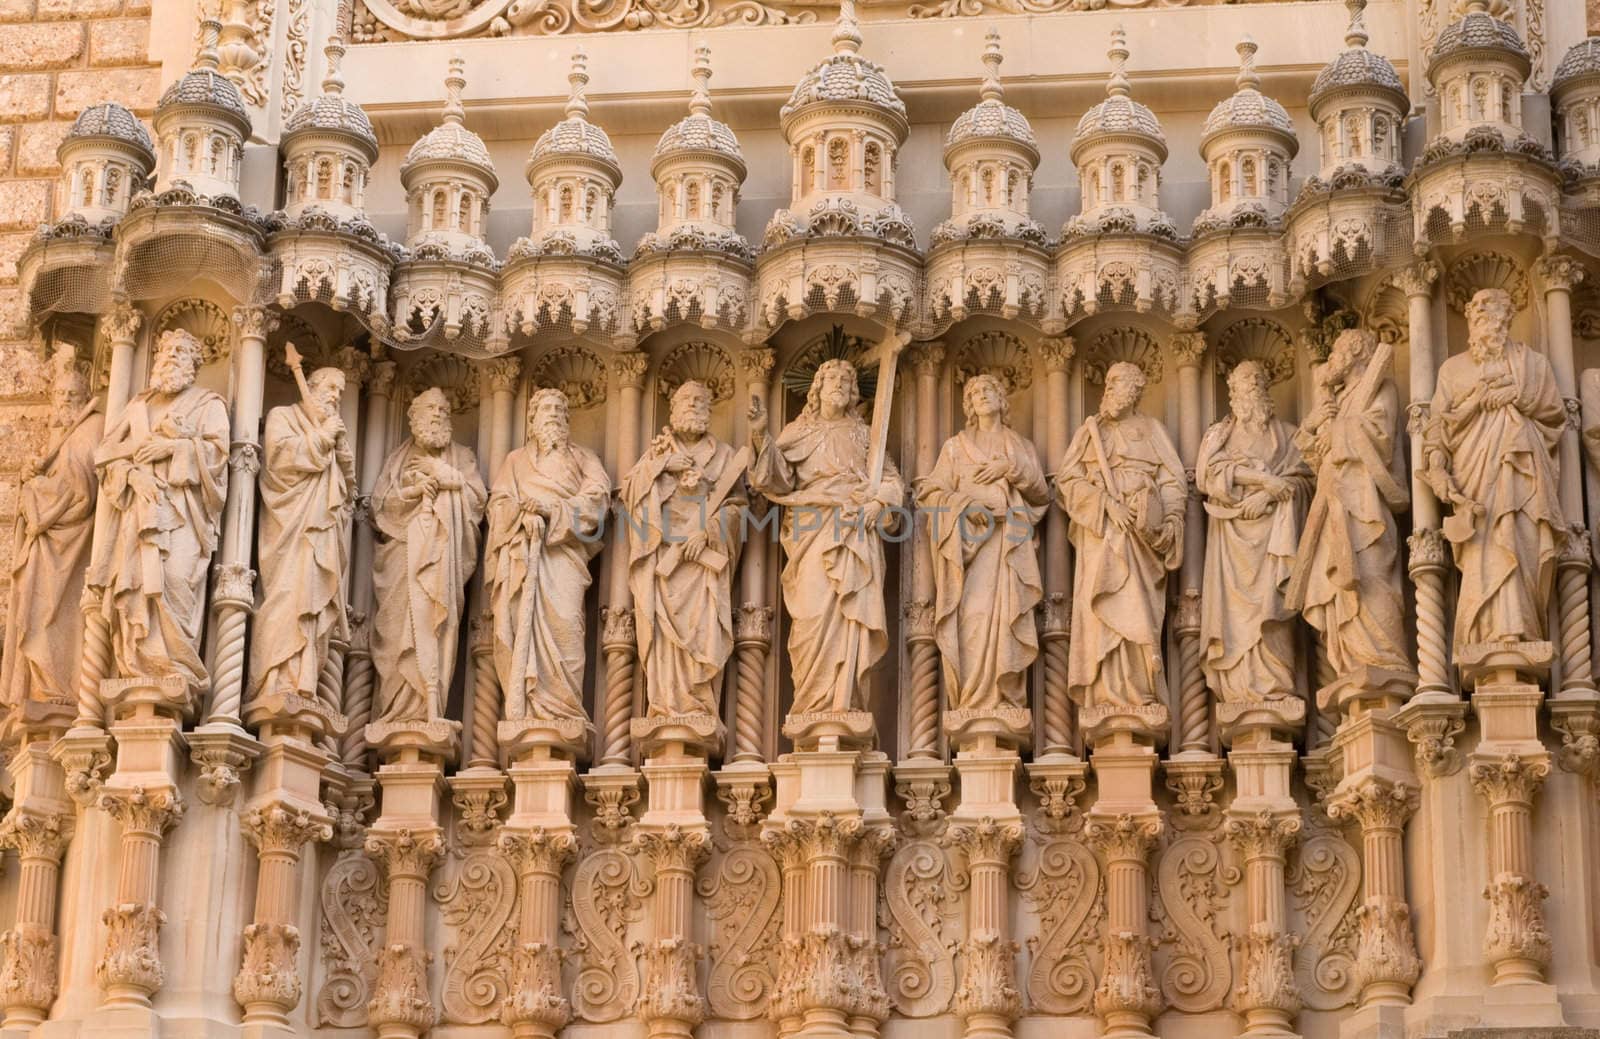 Statues of the Twelve Apostles (katalonien - Spain)